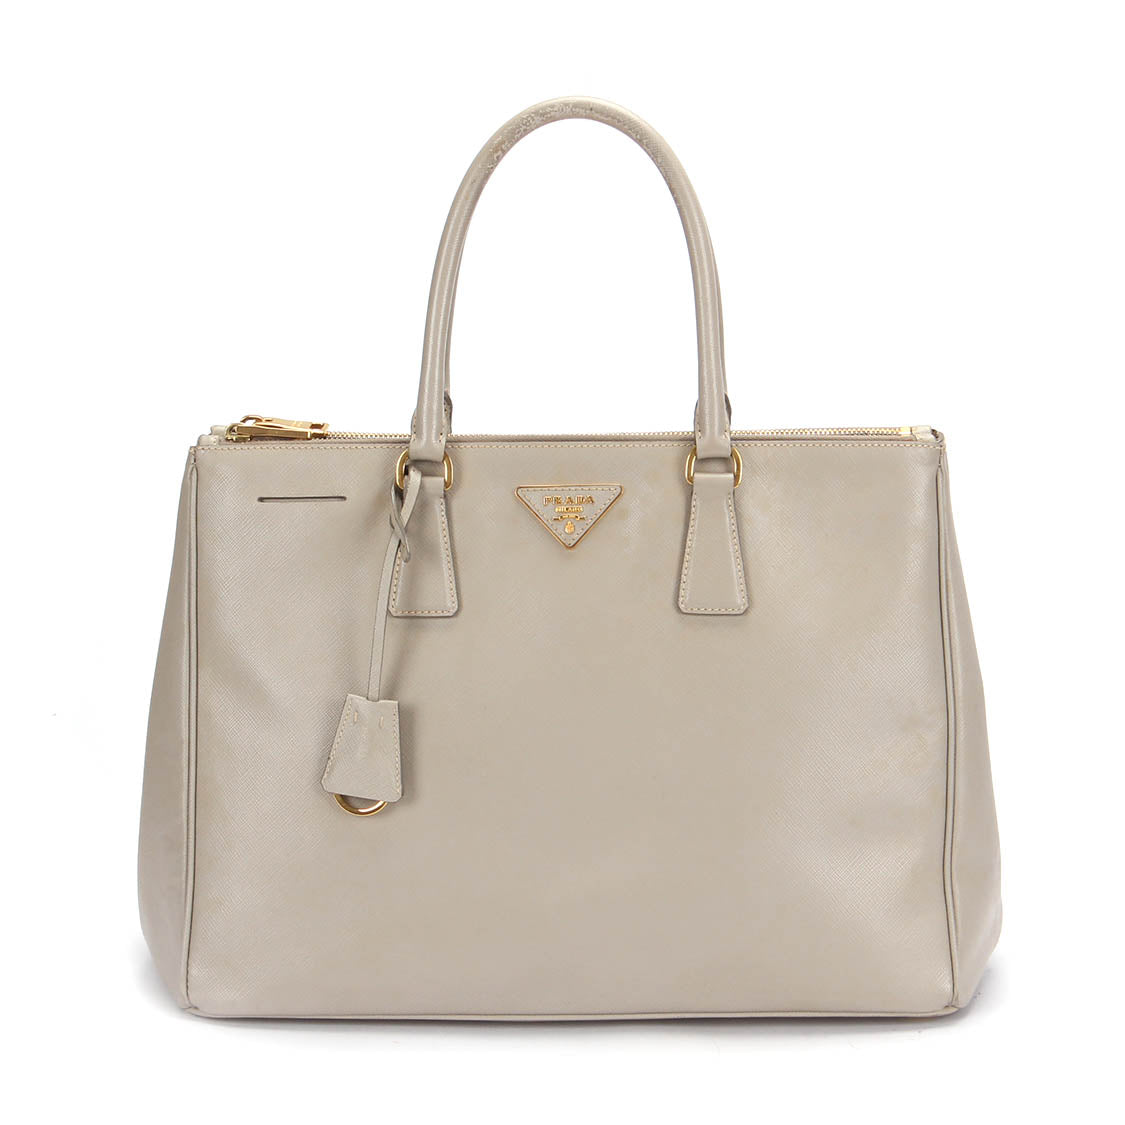 Prada Saffiano Galleria Double Zip Bag Leather Handbag in Bad condition